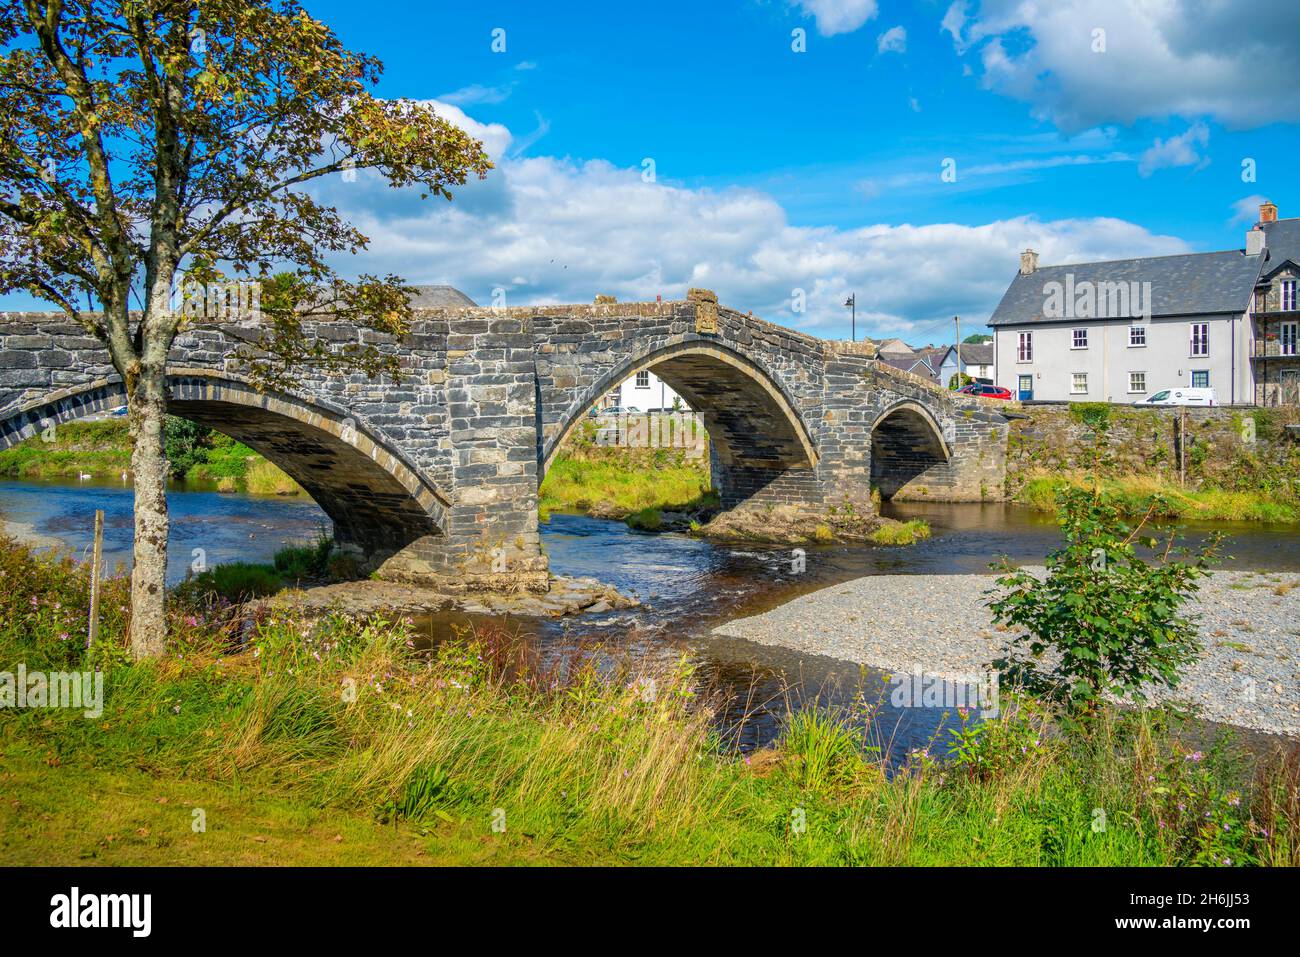 Vue sur le pont Fawr (pont Inigo Jones) sur la rivière Conwy et les maisons au bord de la rivière, Llanrwst, Clwyd, Snowdonia, Nord du pays de Galles,Royaume-Uni, Europe Banque D'Images